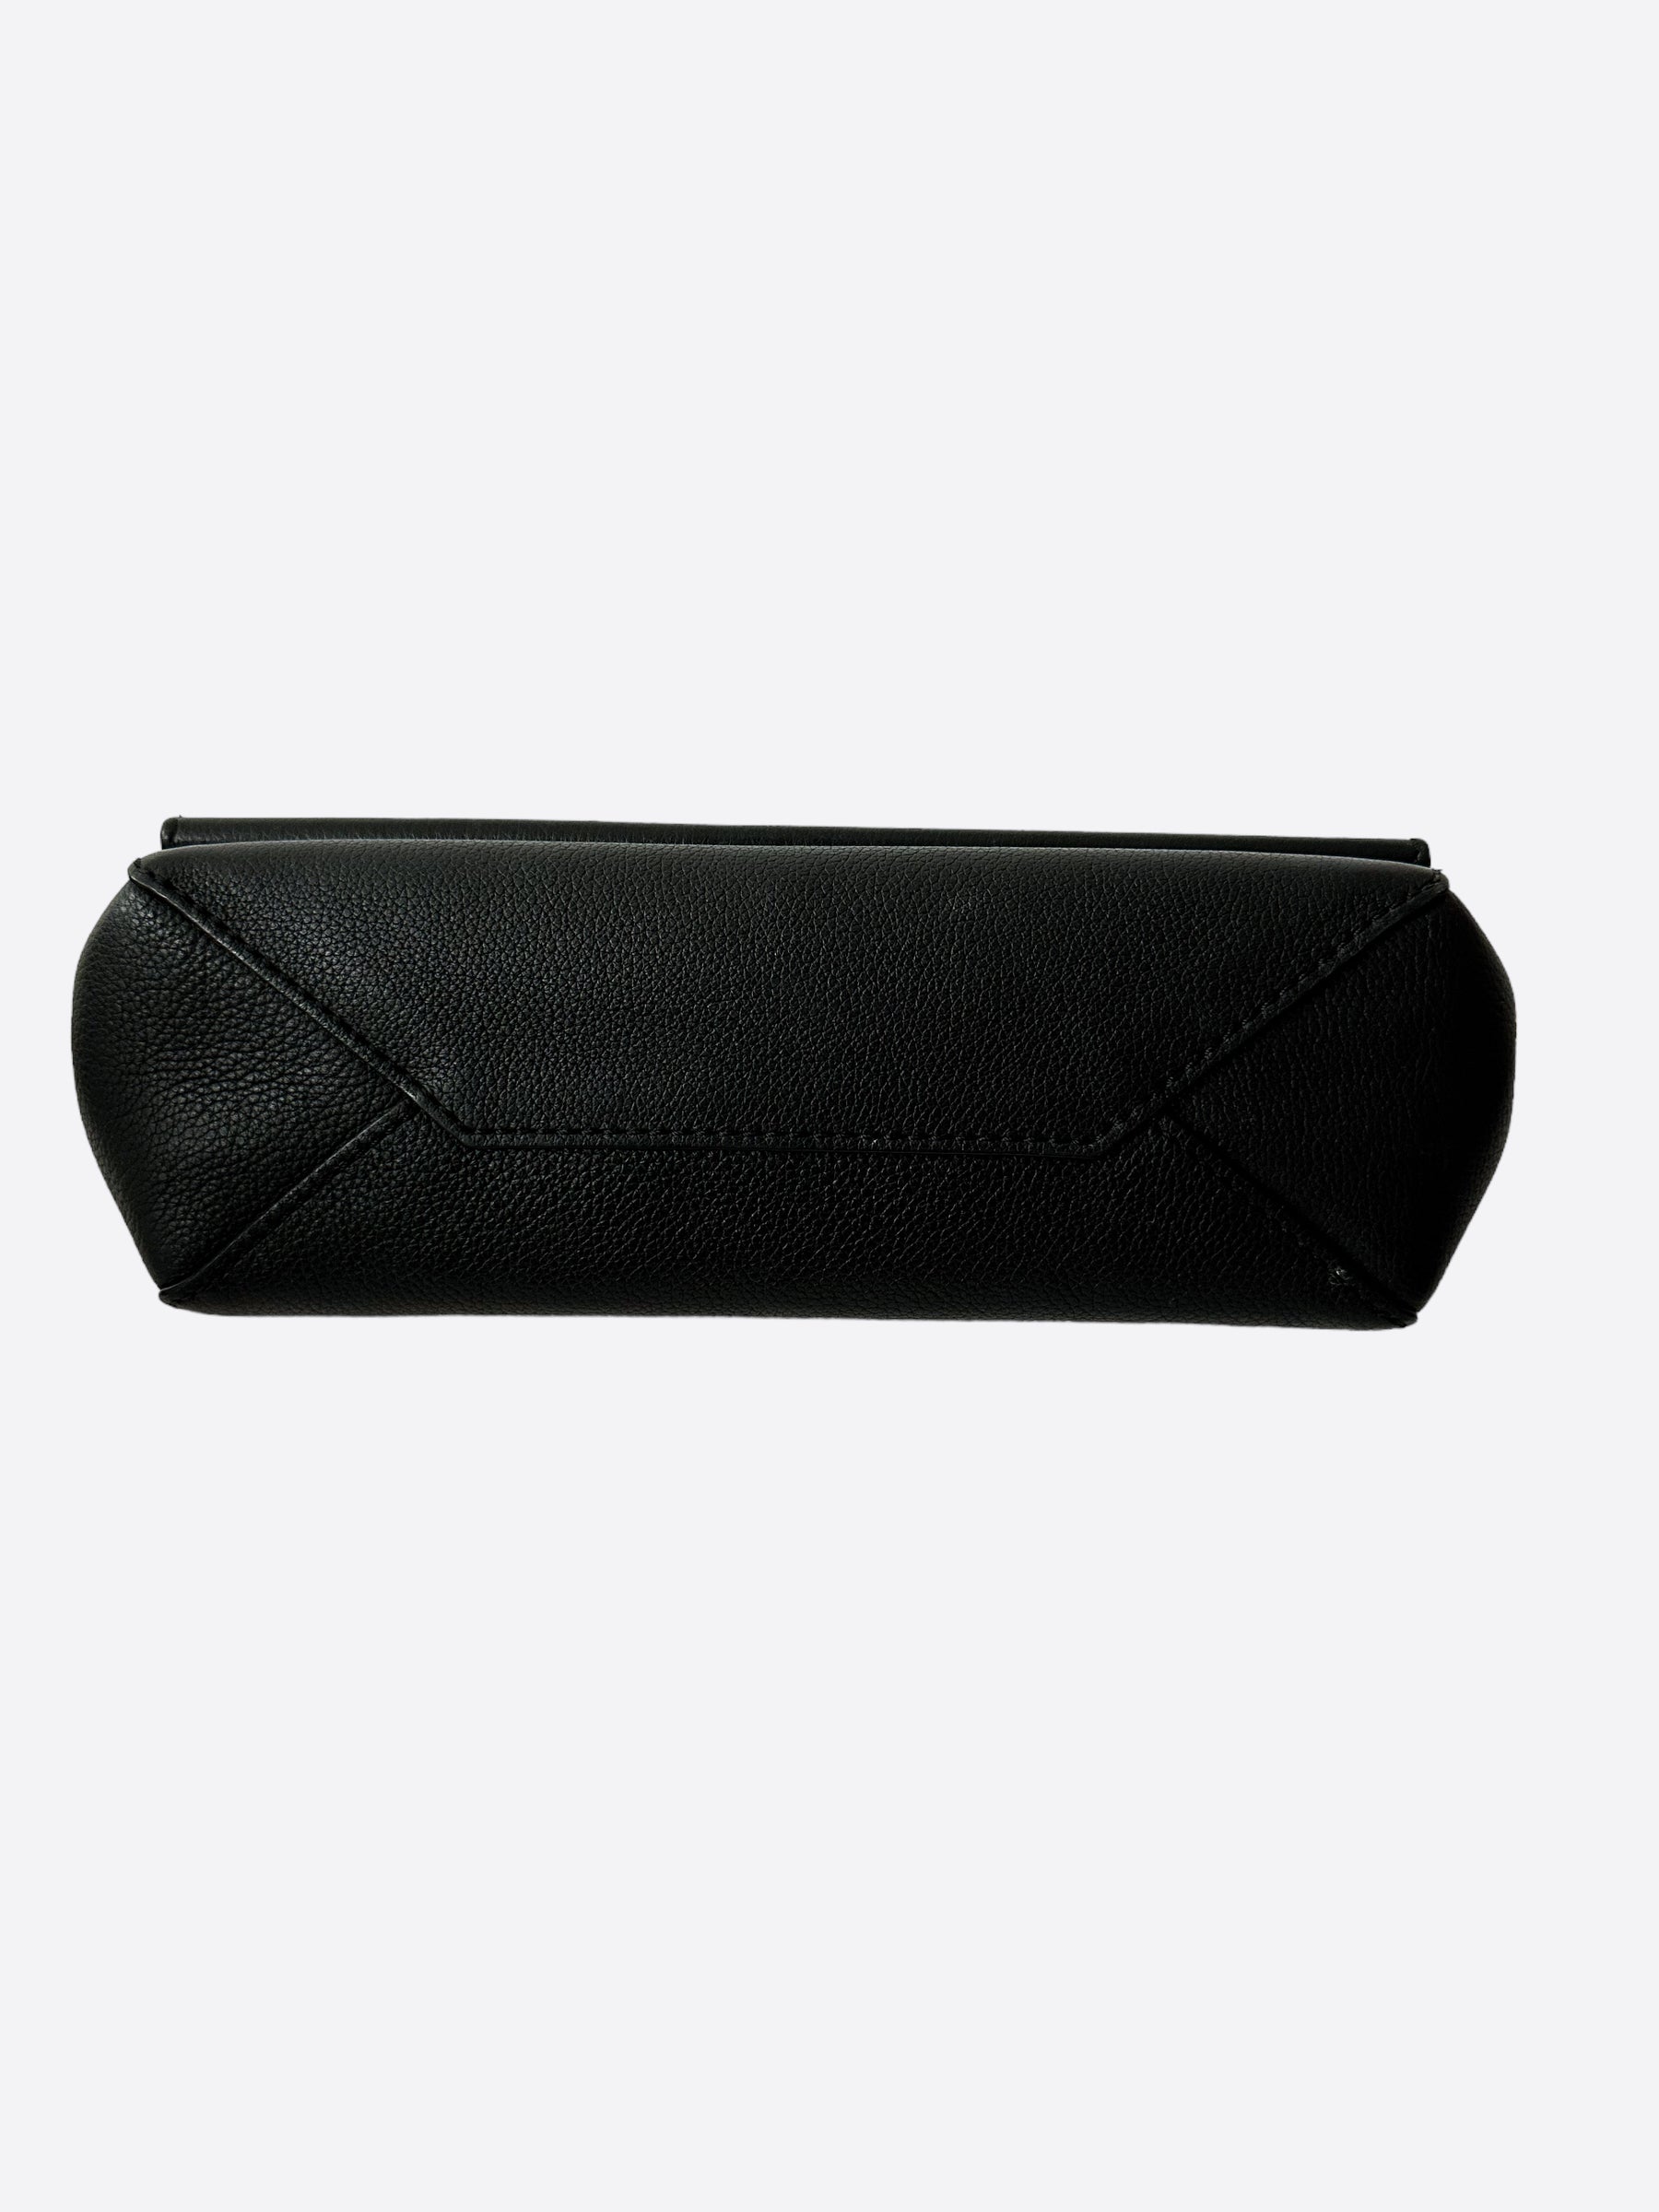 Mini Metallic LockMe Backpack in Metallic Leather Body